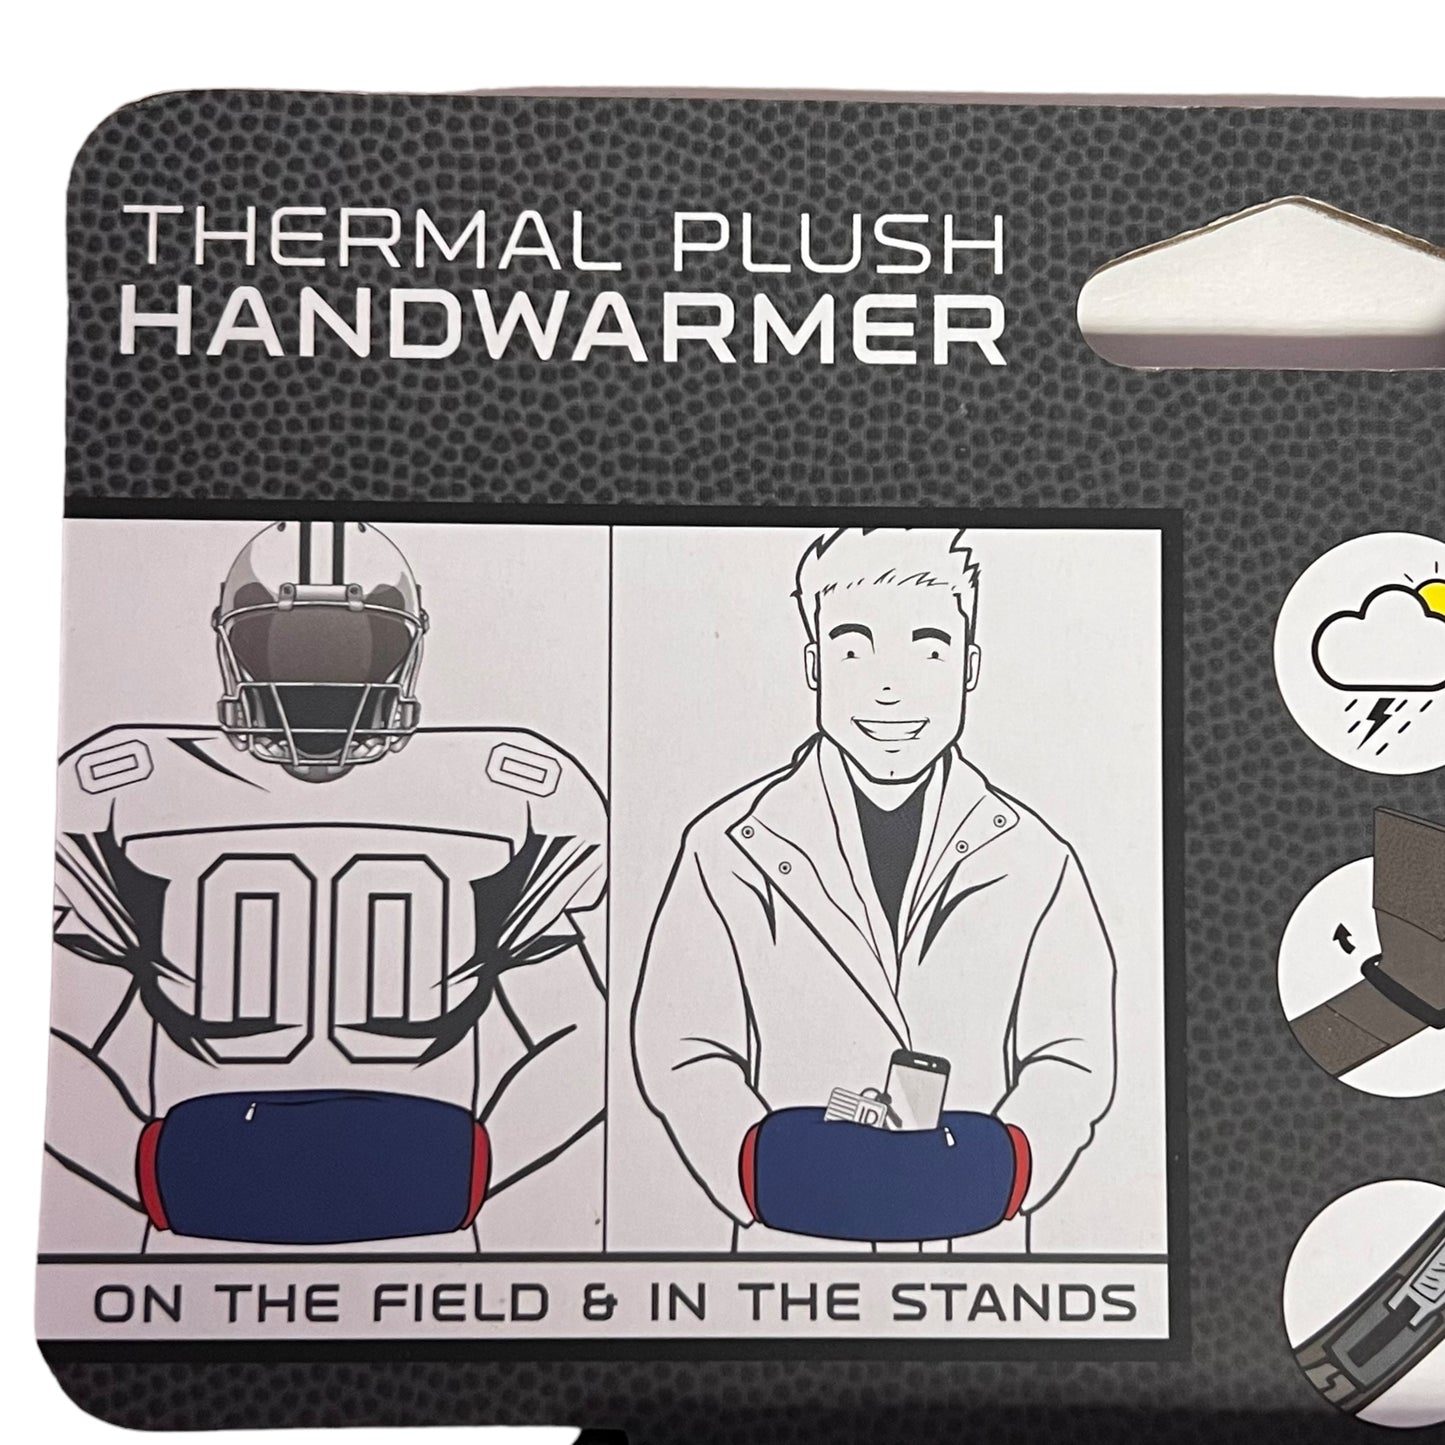 NEW! NFL Steelers Fan Thermal Plush Handwarmer